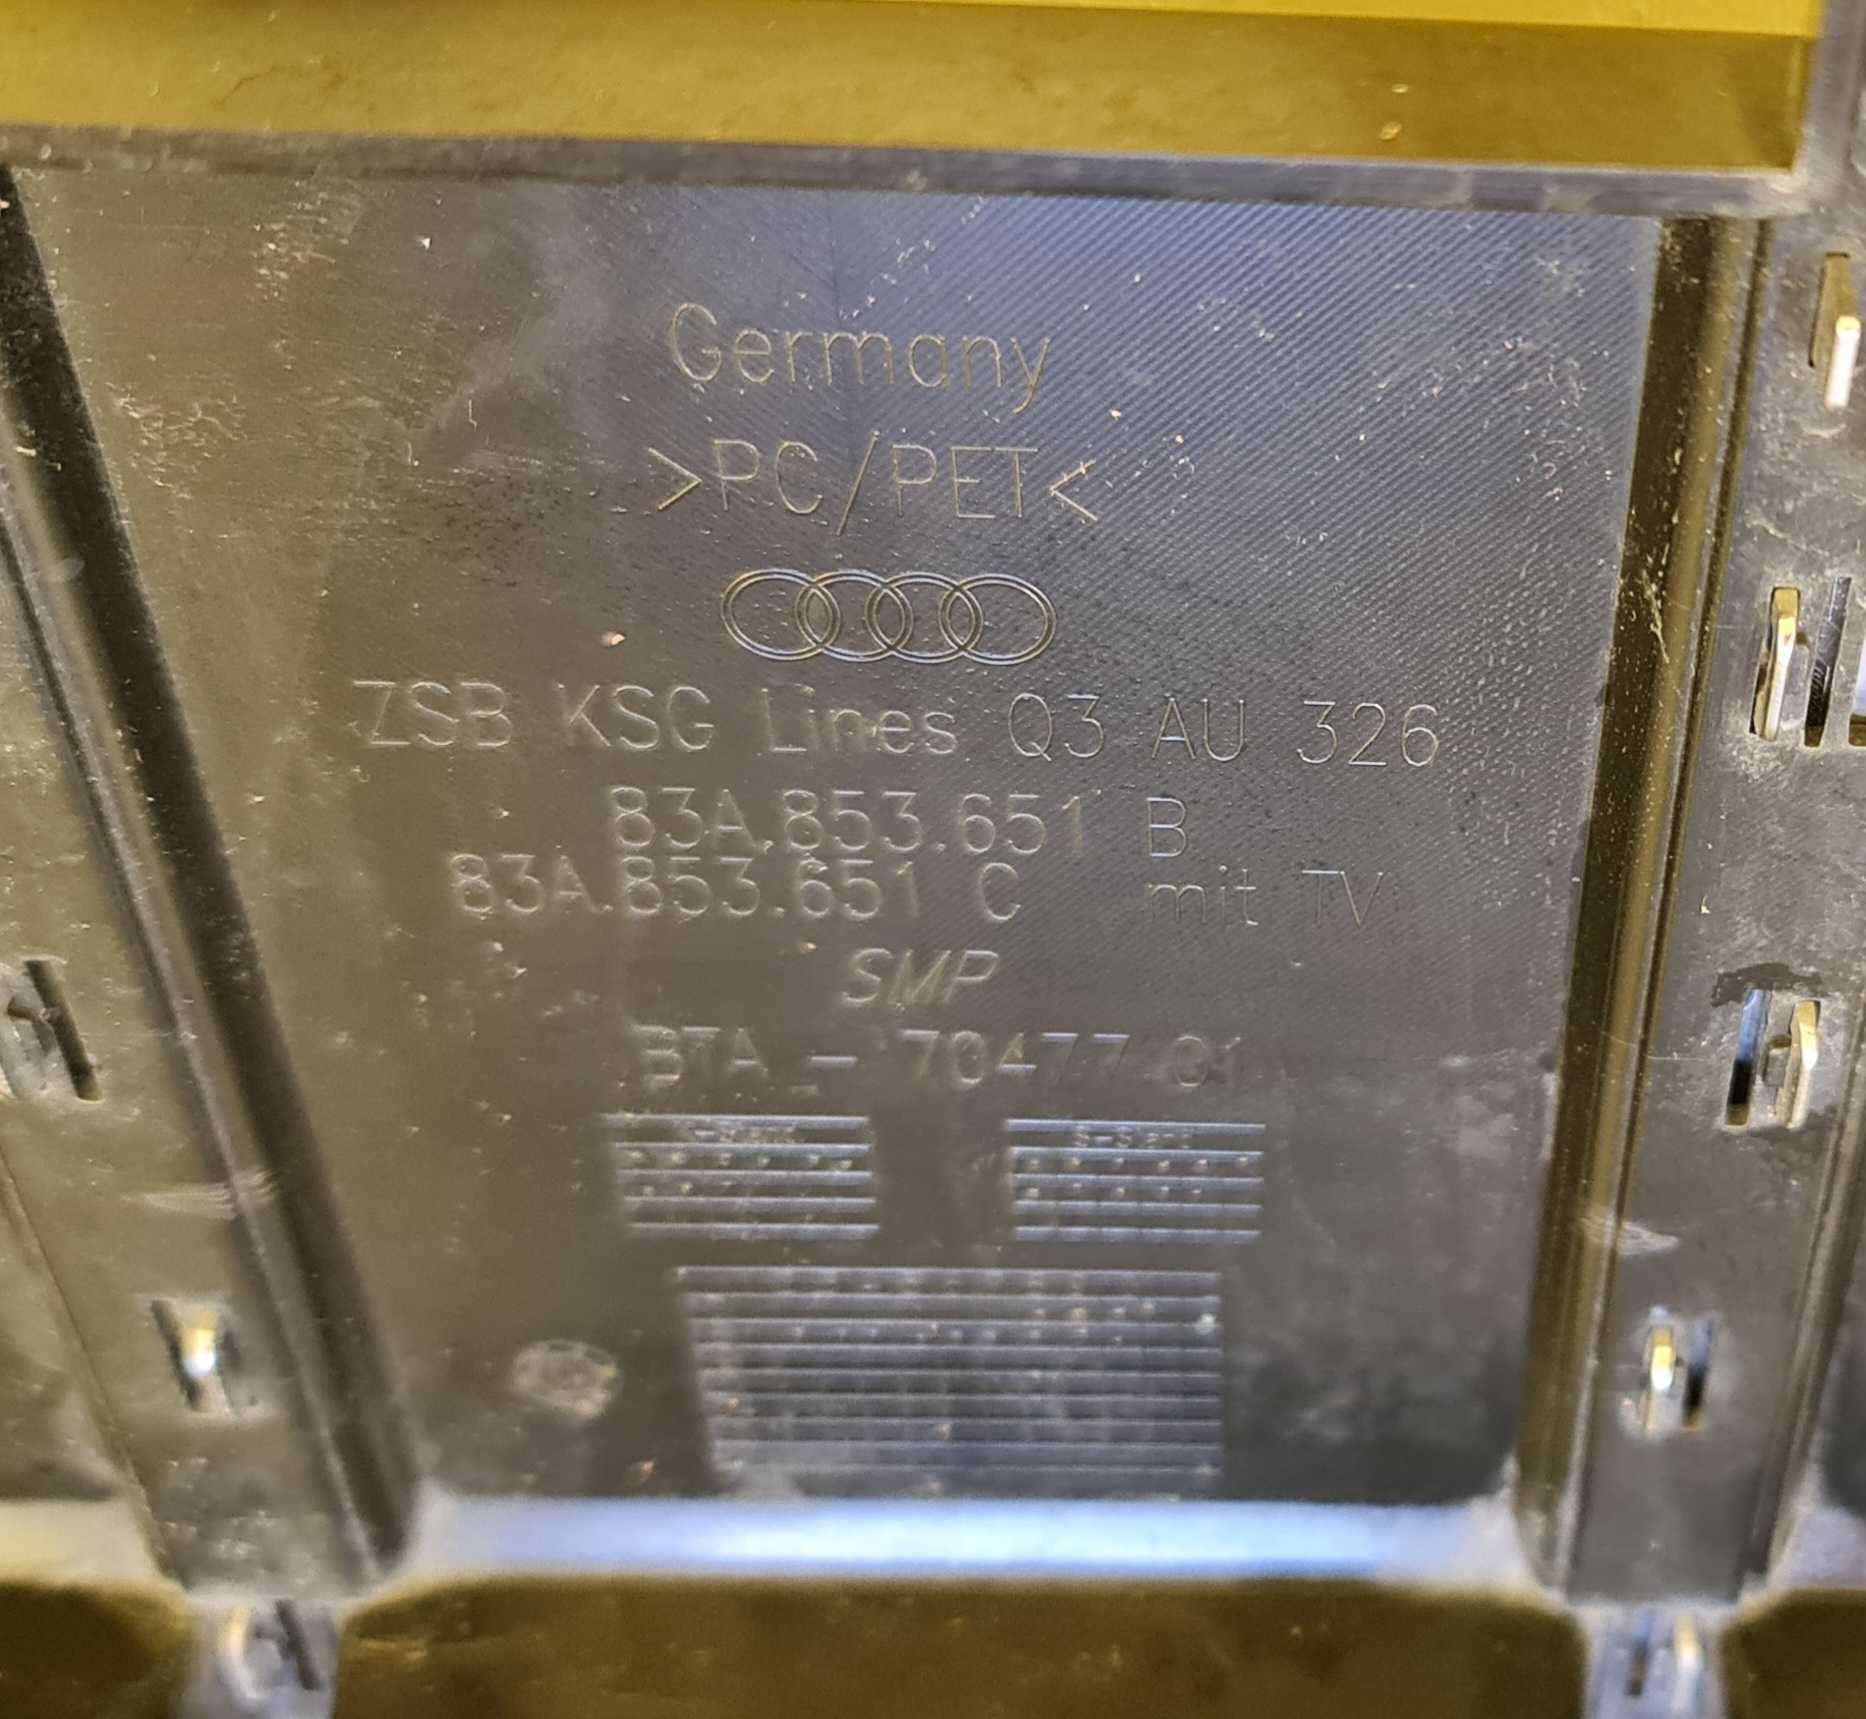 Audi Q3 MK2 Оригинална предна решетка 83A 853 651. 2018 г. 2022 г